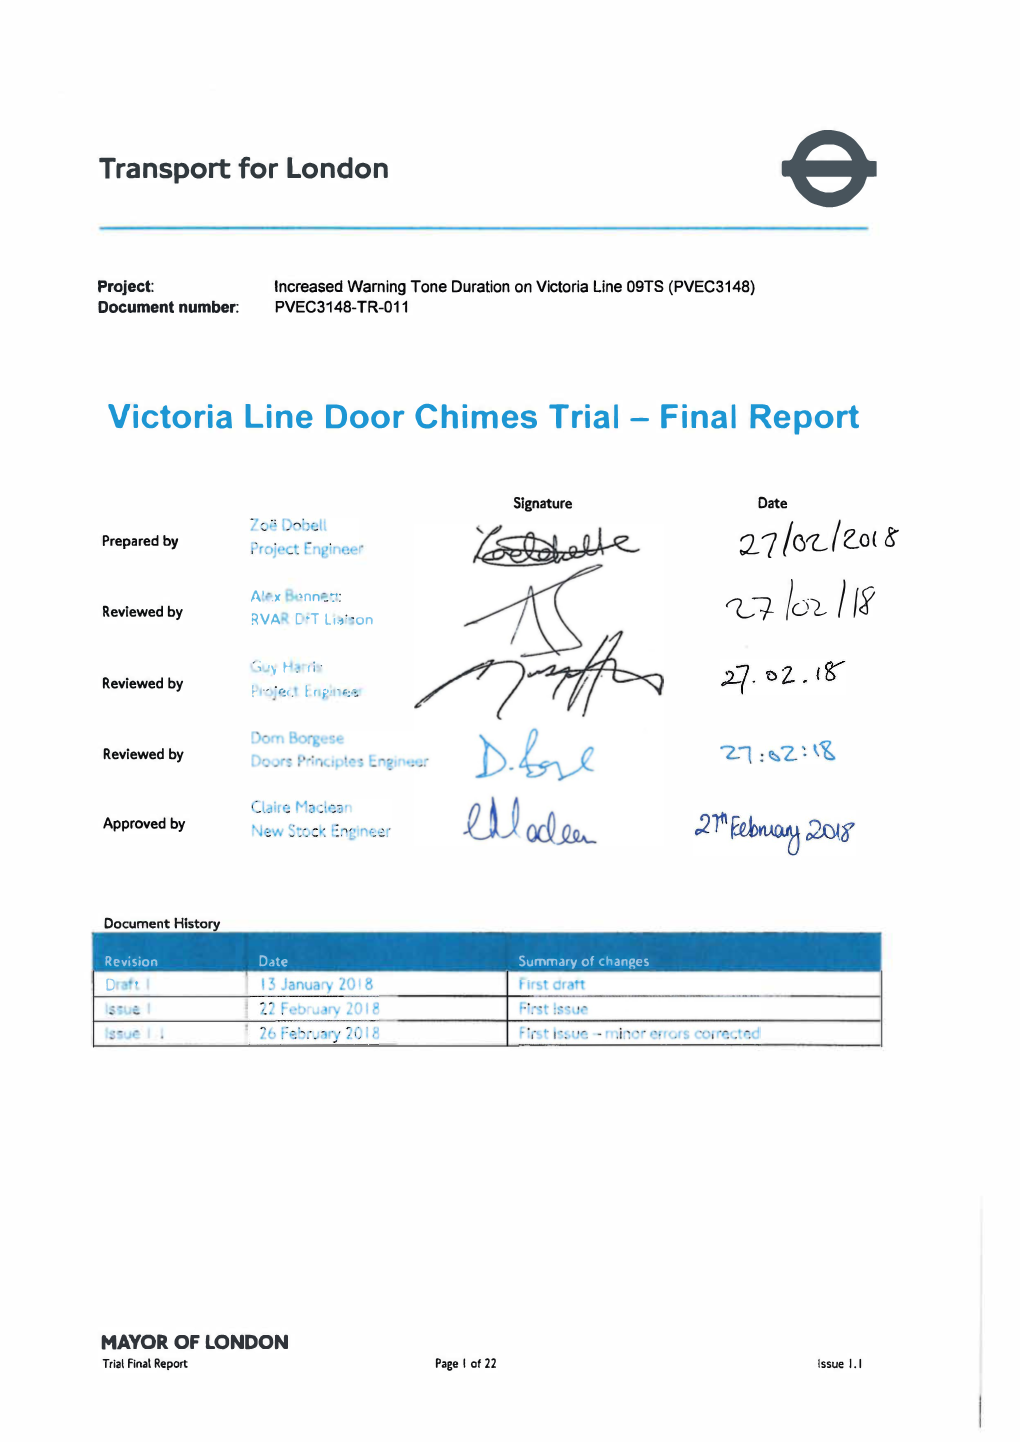 Victoria Line Door Chimes Trial - Final Report